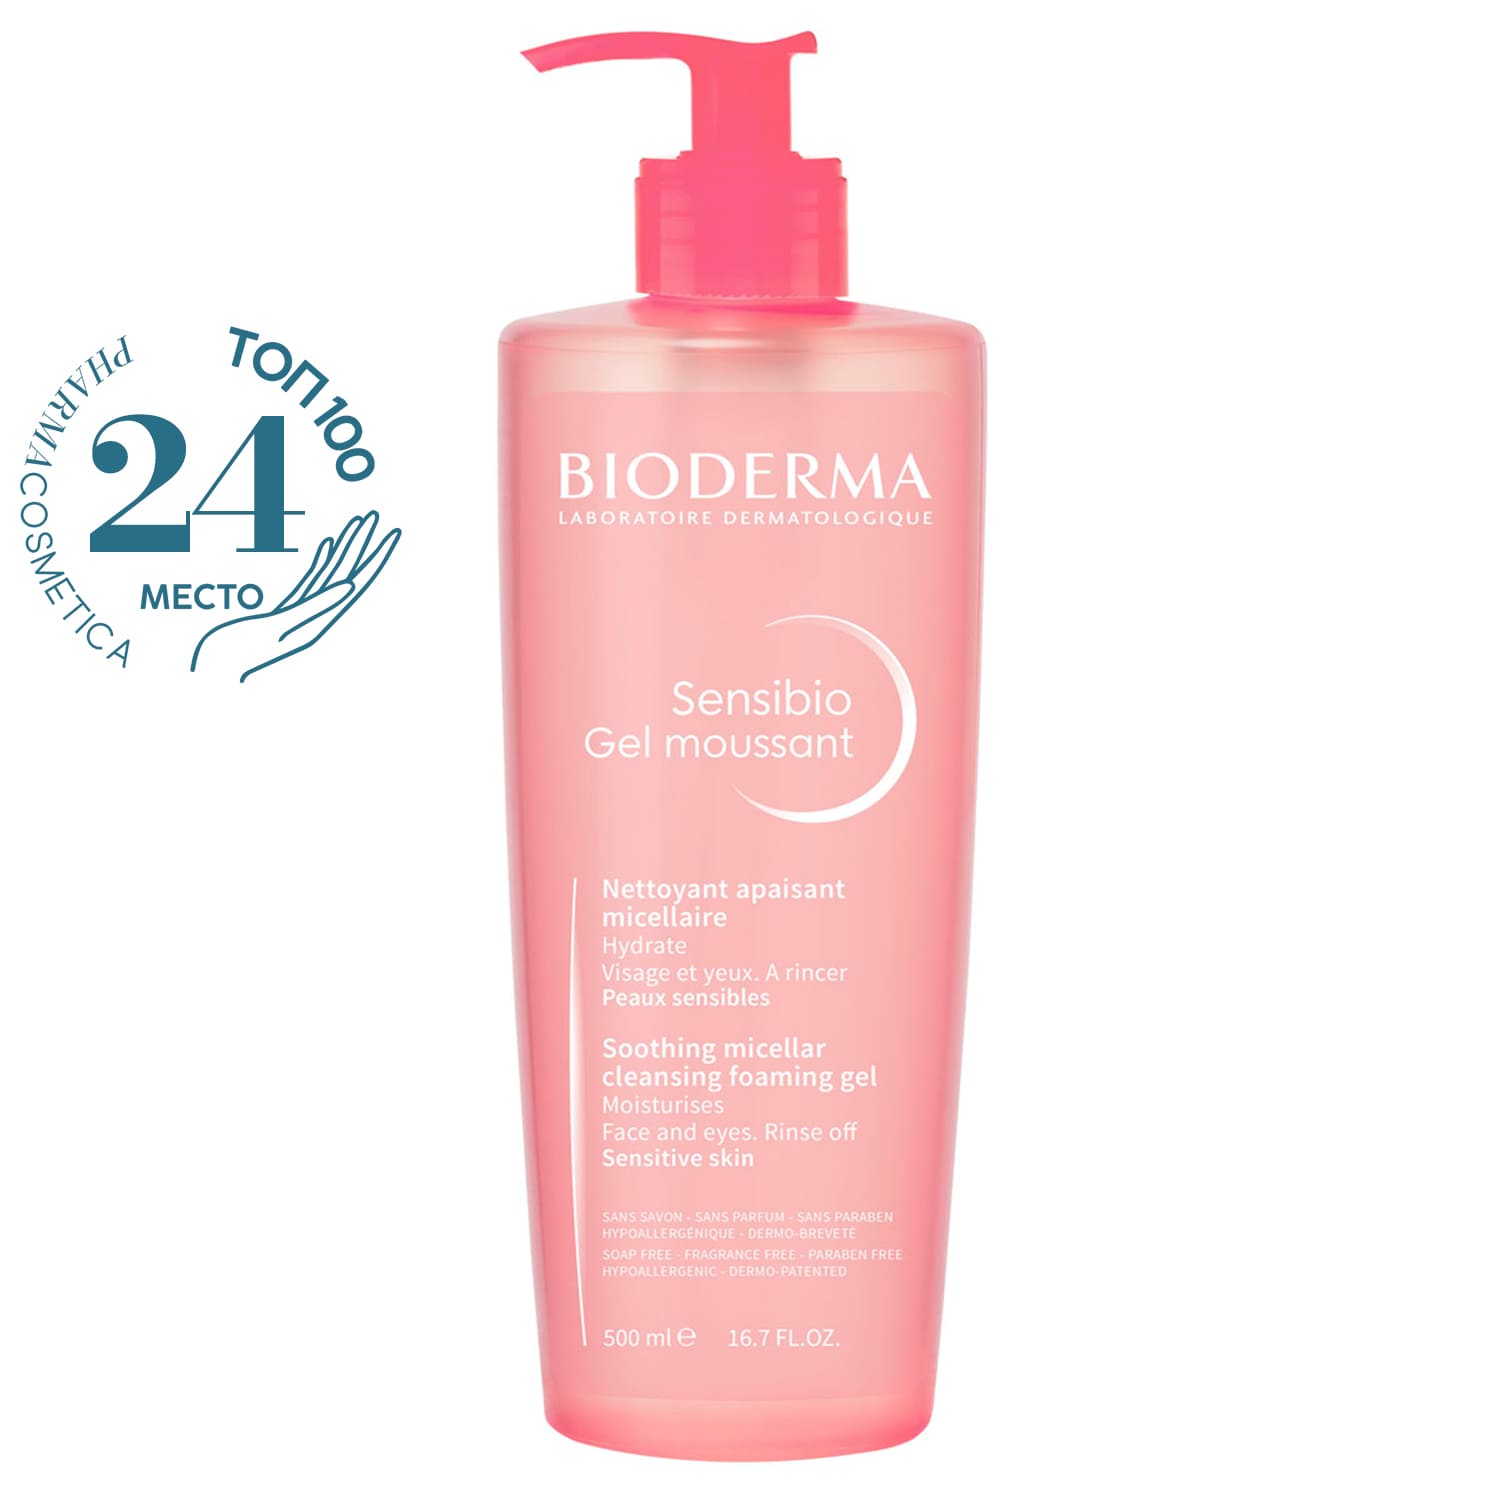 Bioderma Очищающий мицеллярный гель для чувствительной кожи, 500 мл (Bioderma, Sensibio) очищающий гель bioderma sensibio 500 мл